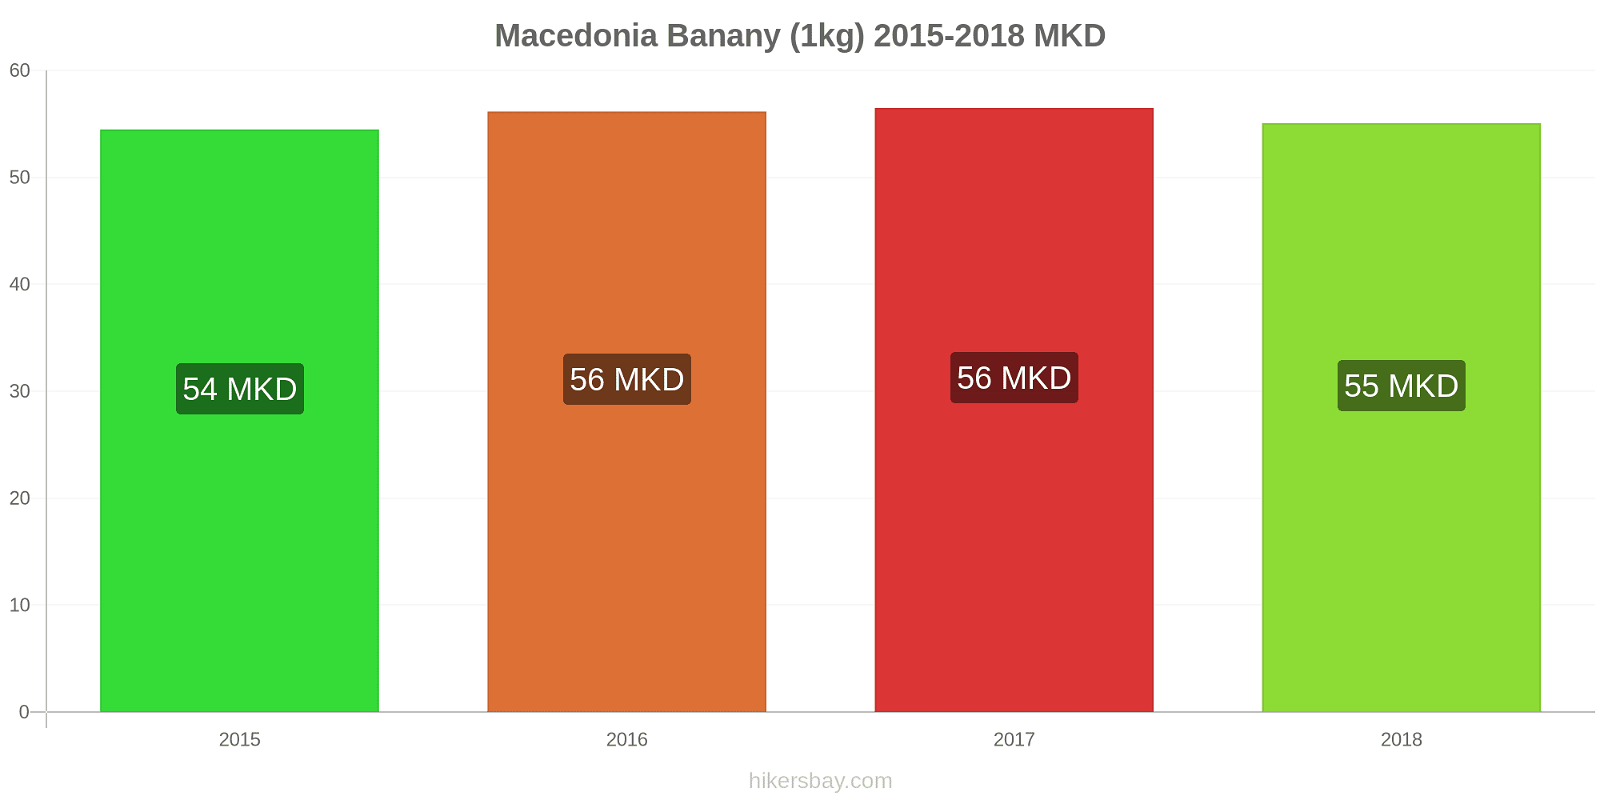 Macedonia zmiany cen Banany (1kg) hikersbay.com